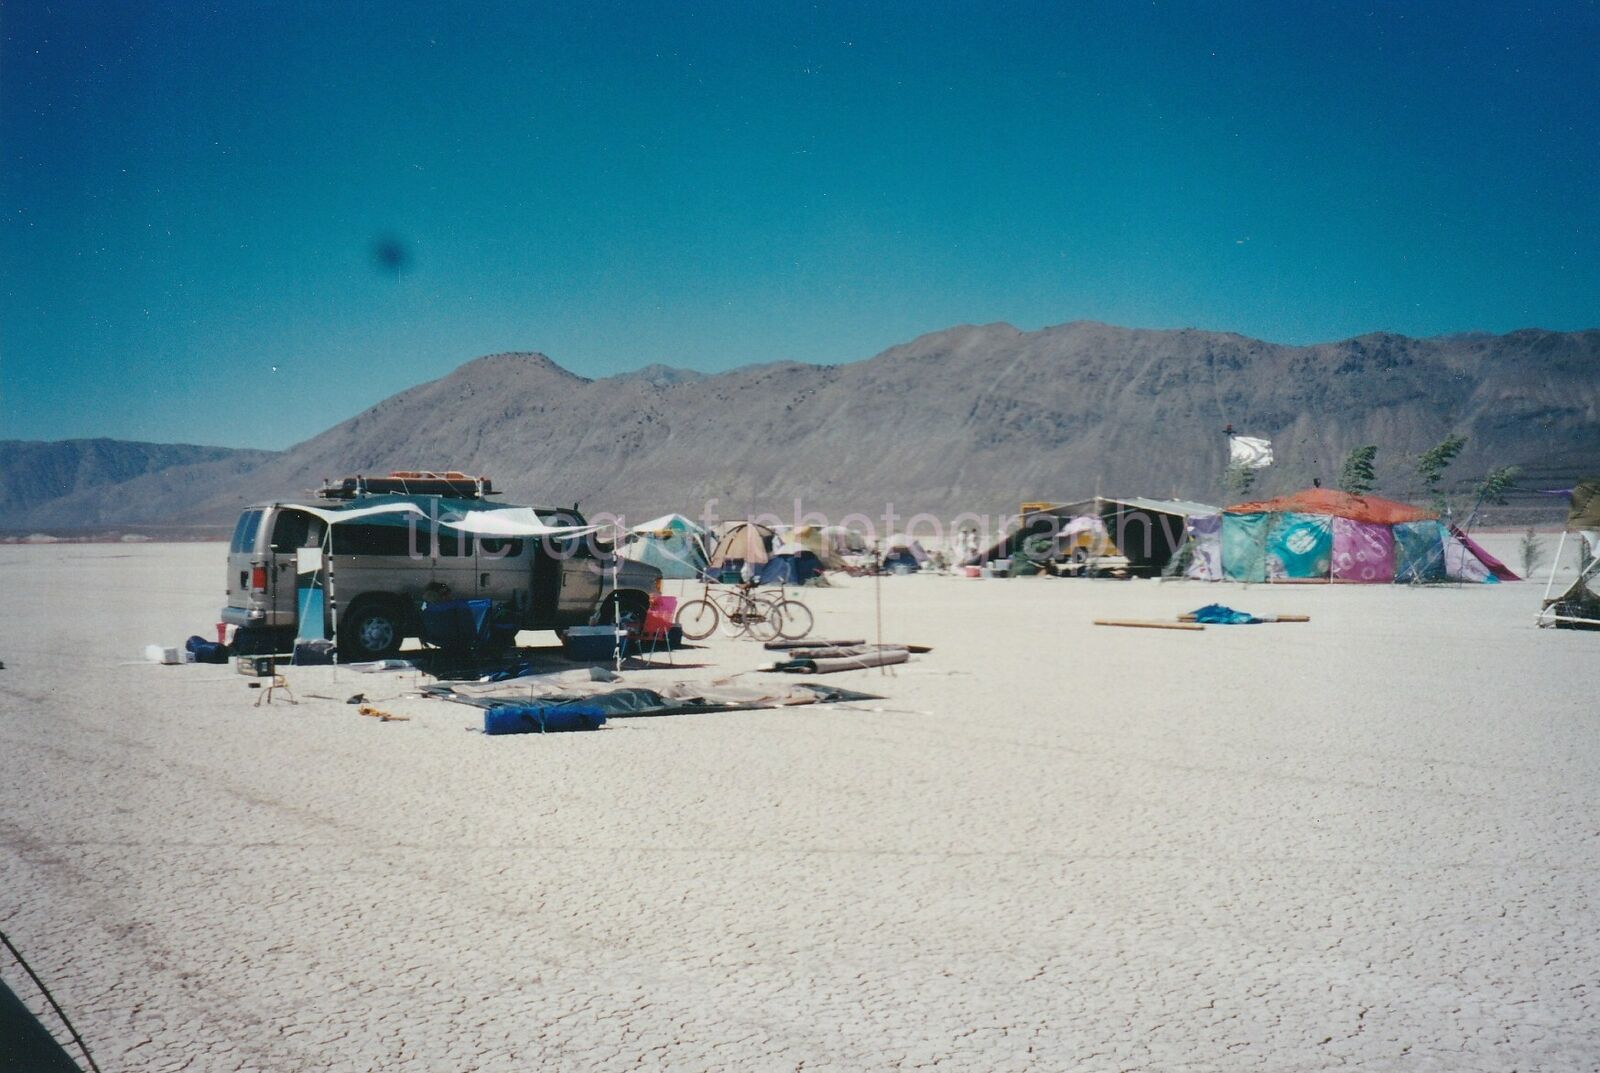 DESERT ENCAMPMENT Burning Man 90's FOUND Photo Poster painting Original Snapshot VINTAGE 96 6